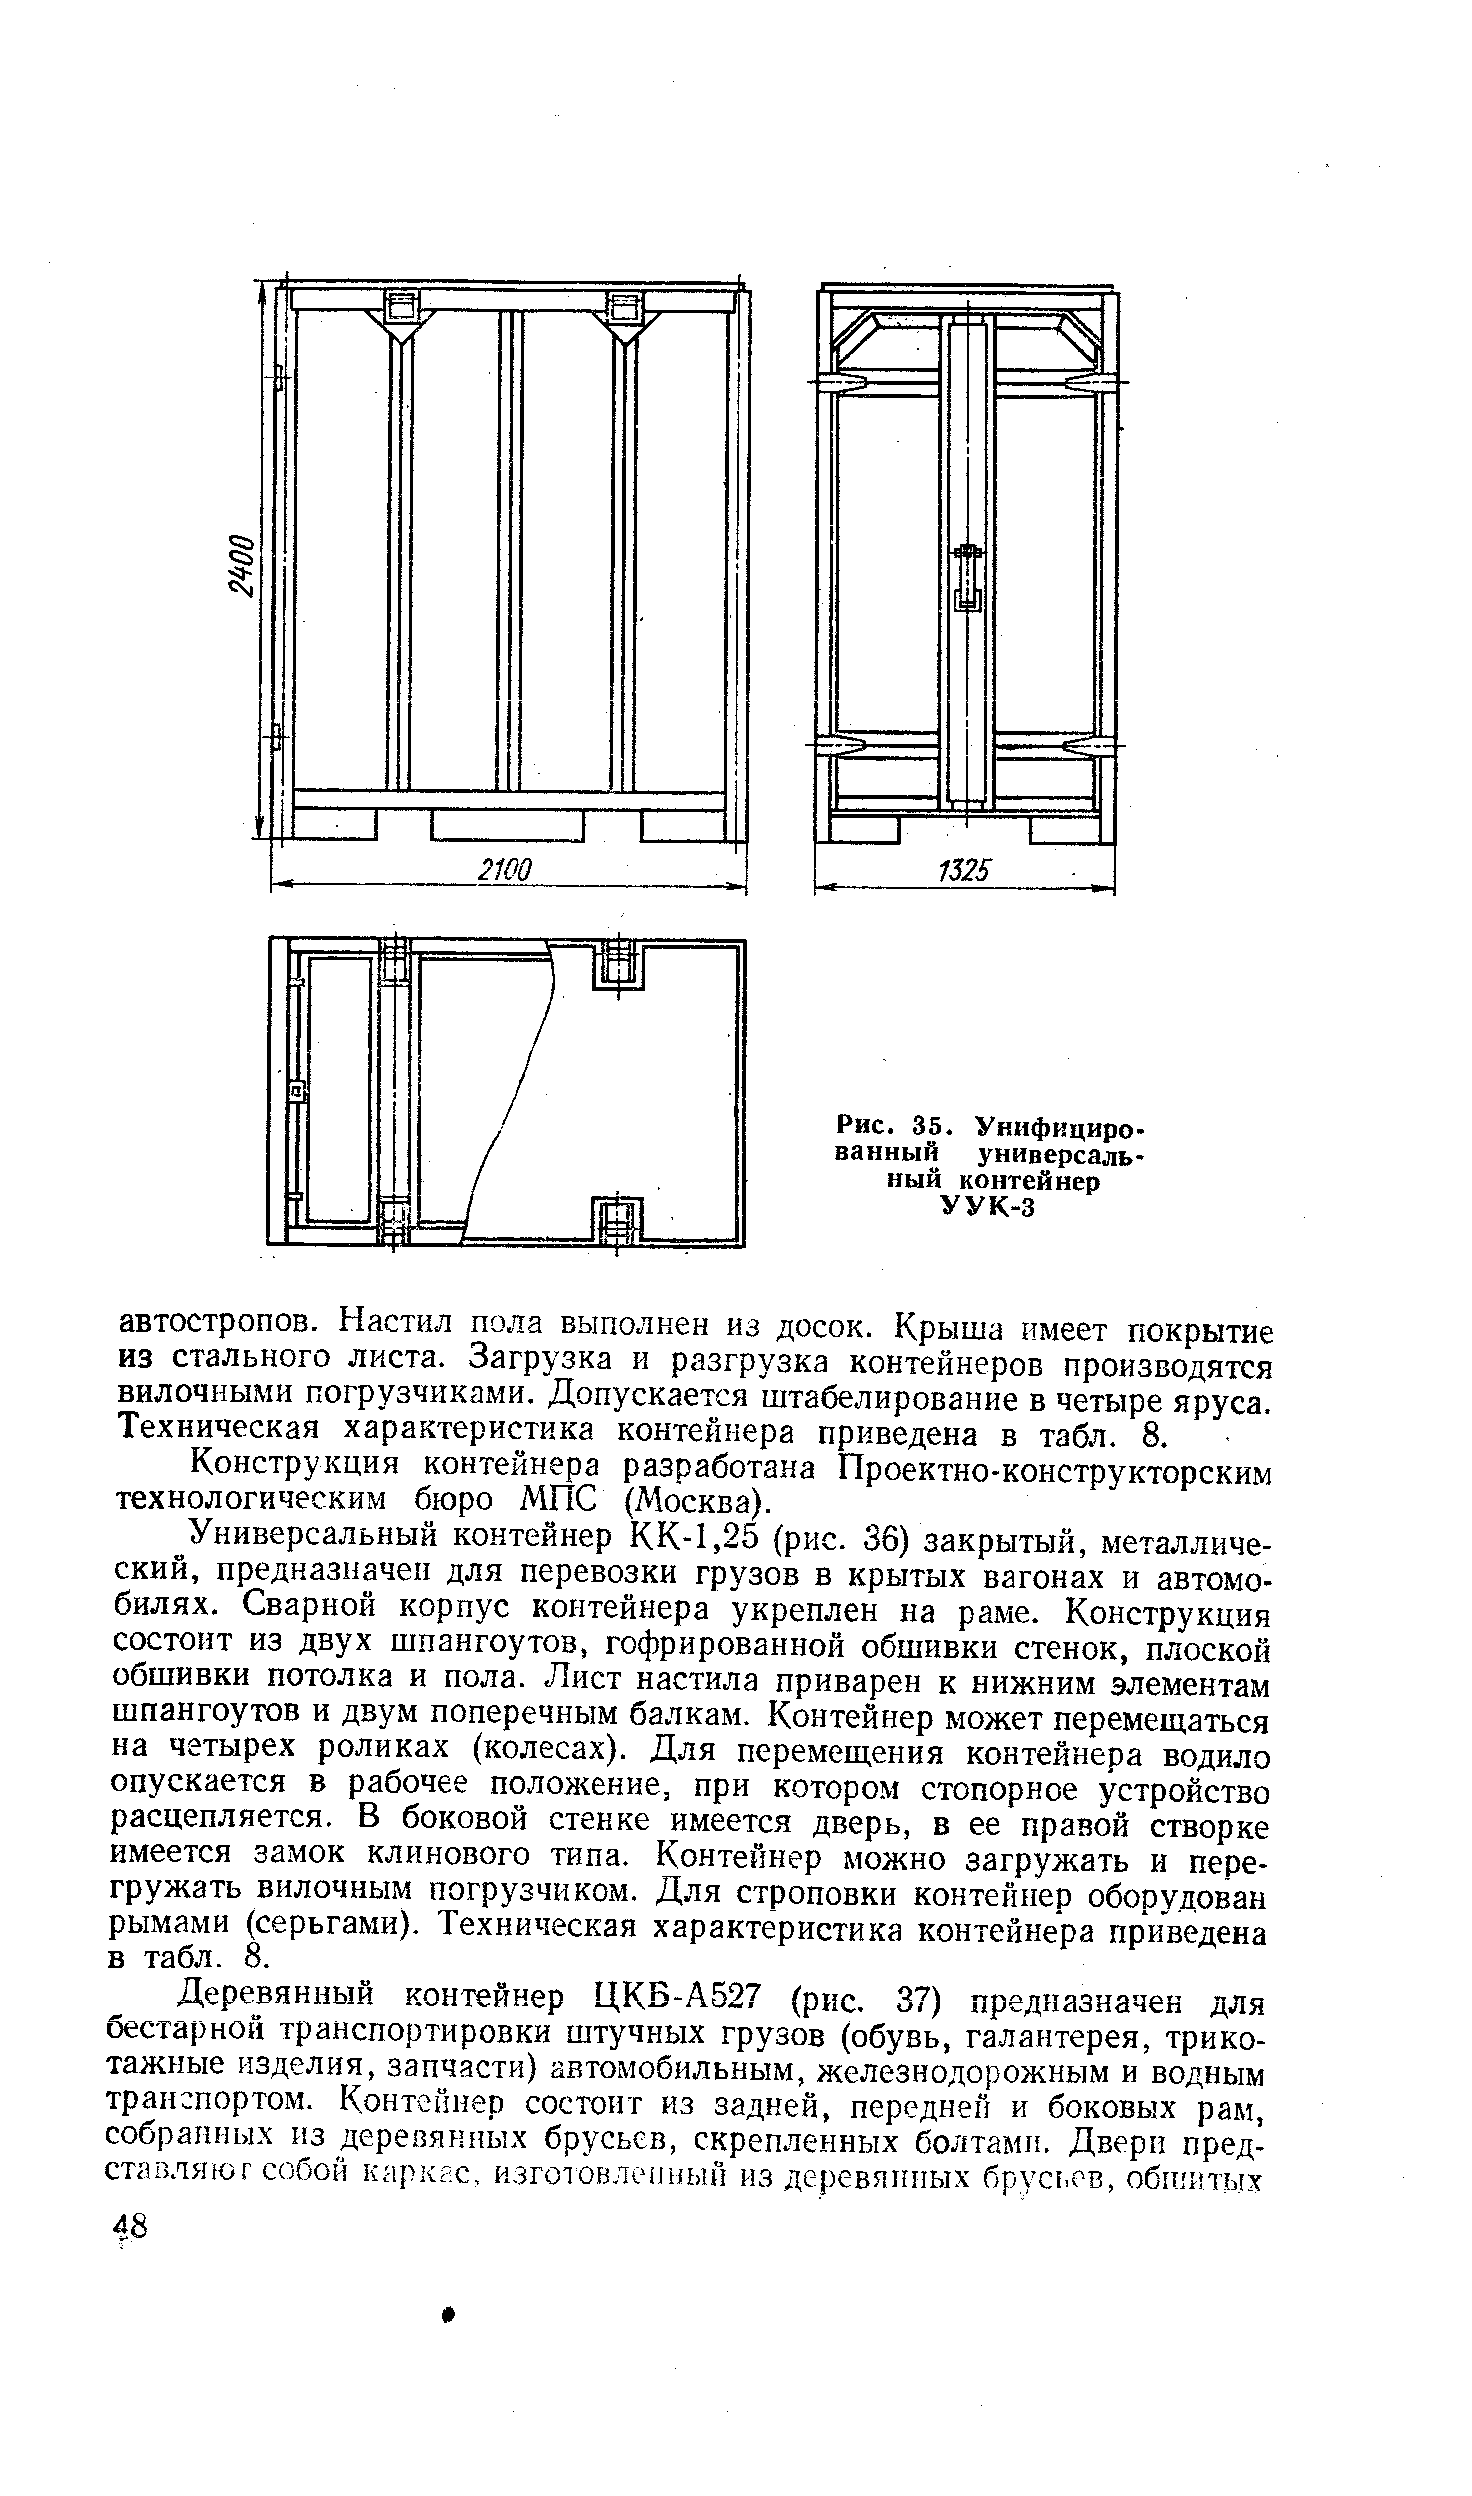 Рис. 35. Унифицированный универсальный контейнер УУК-3
